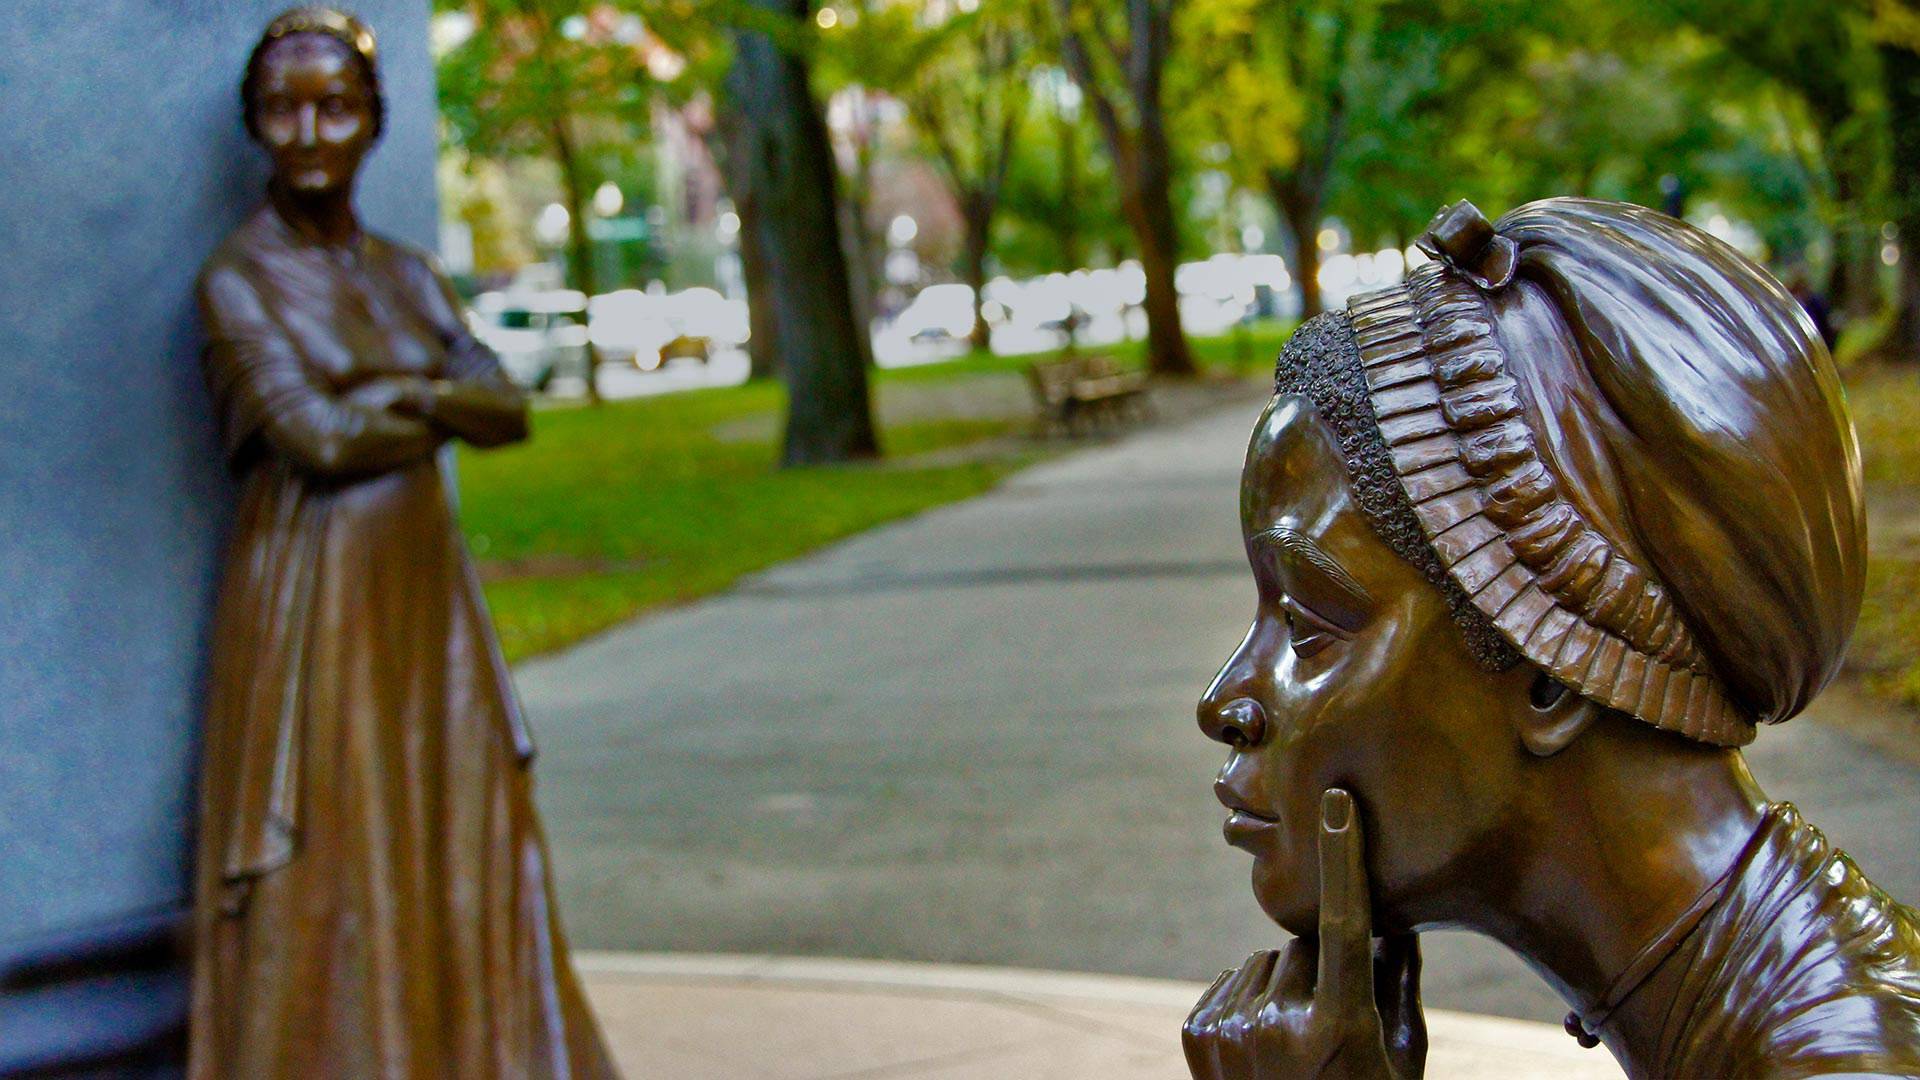 菲利斯·惠特利和阿比盖尔·亚当斯的雕像-www.todaybing.com 必应壁纸 必应美图